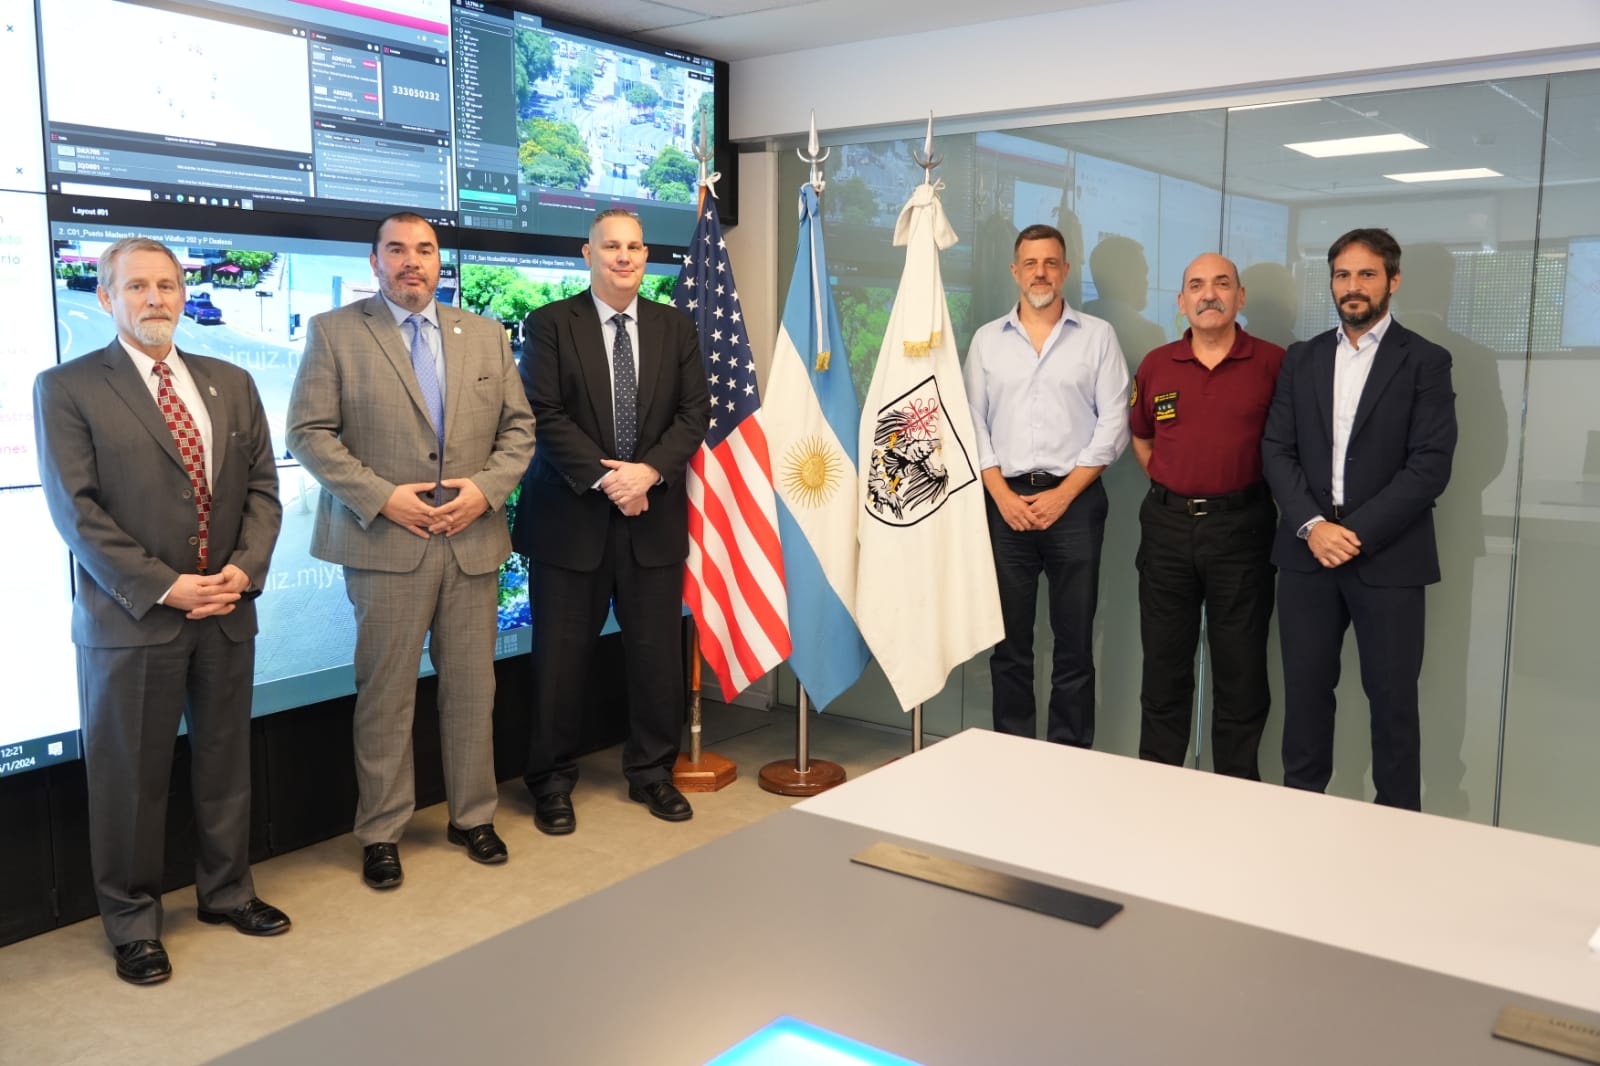 Visita del Servicio de Seguridad Diplomática de la Embajada de EE. UU. al CMU de Chacarita